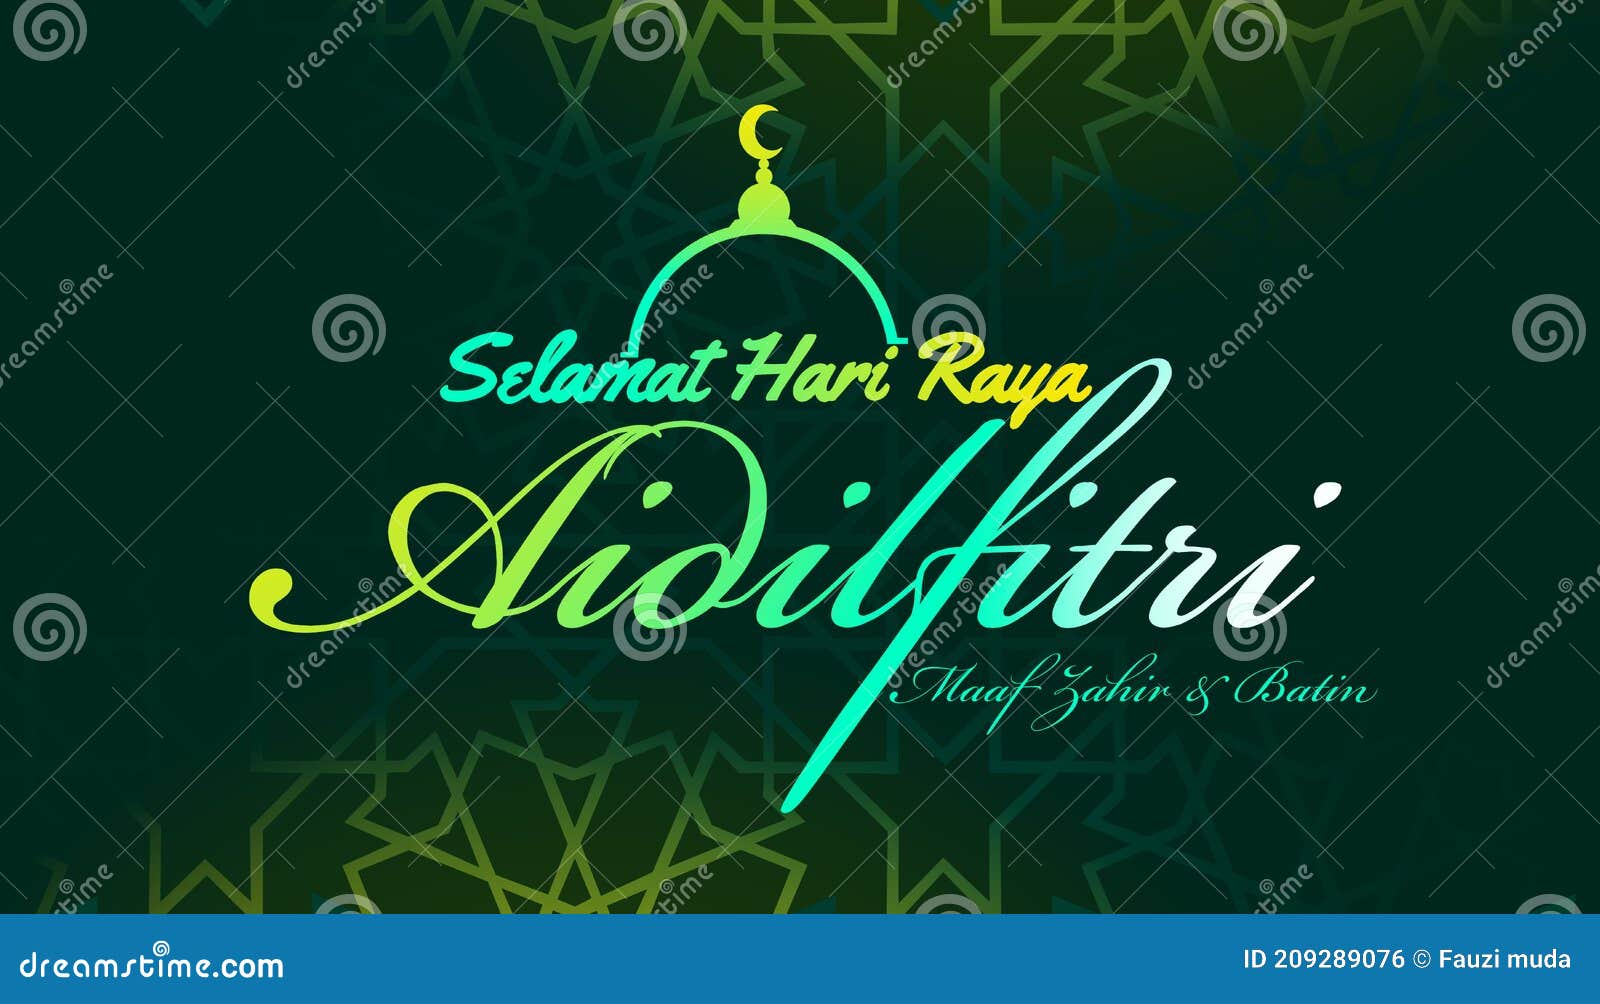 aidilfitri graphic ."selamat hari raya aidilfitri" literally means feast of eid al-fitr.